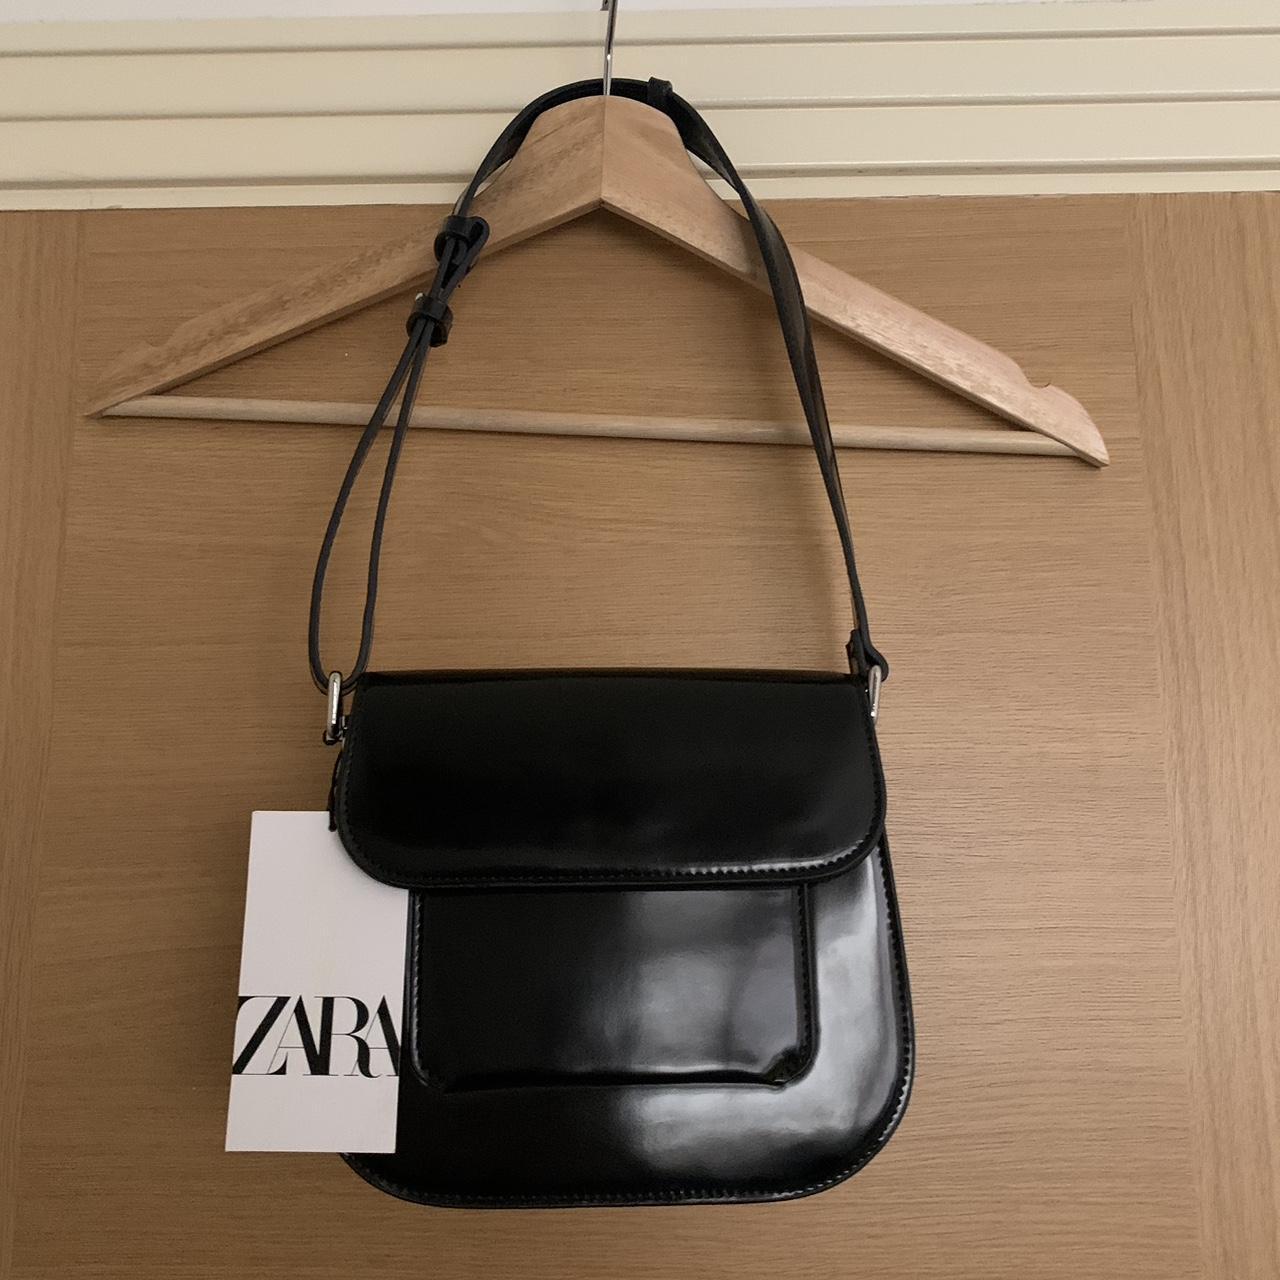 Black Zara shoulder bag New with tags #zara #zarabag - Depop